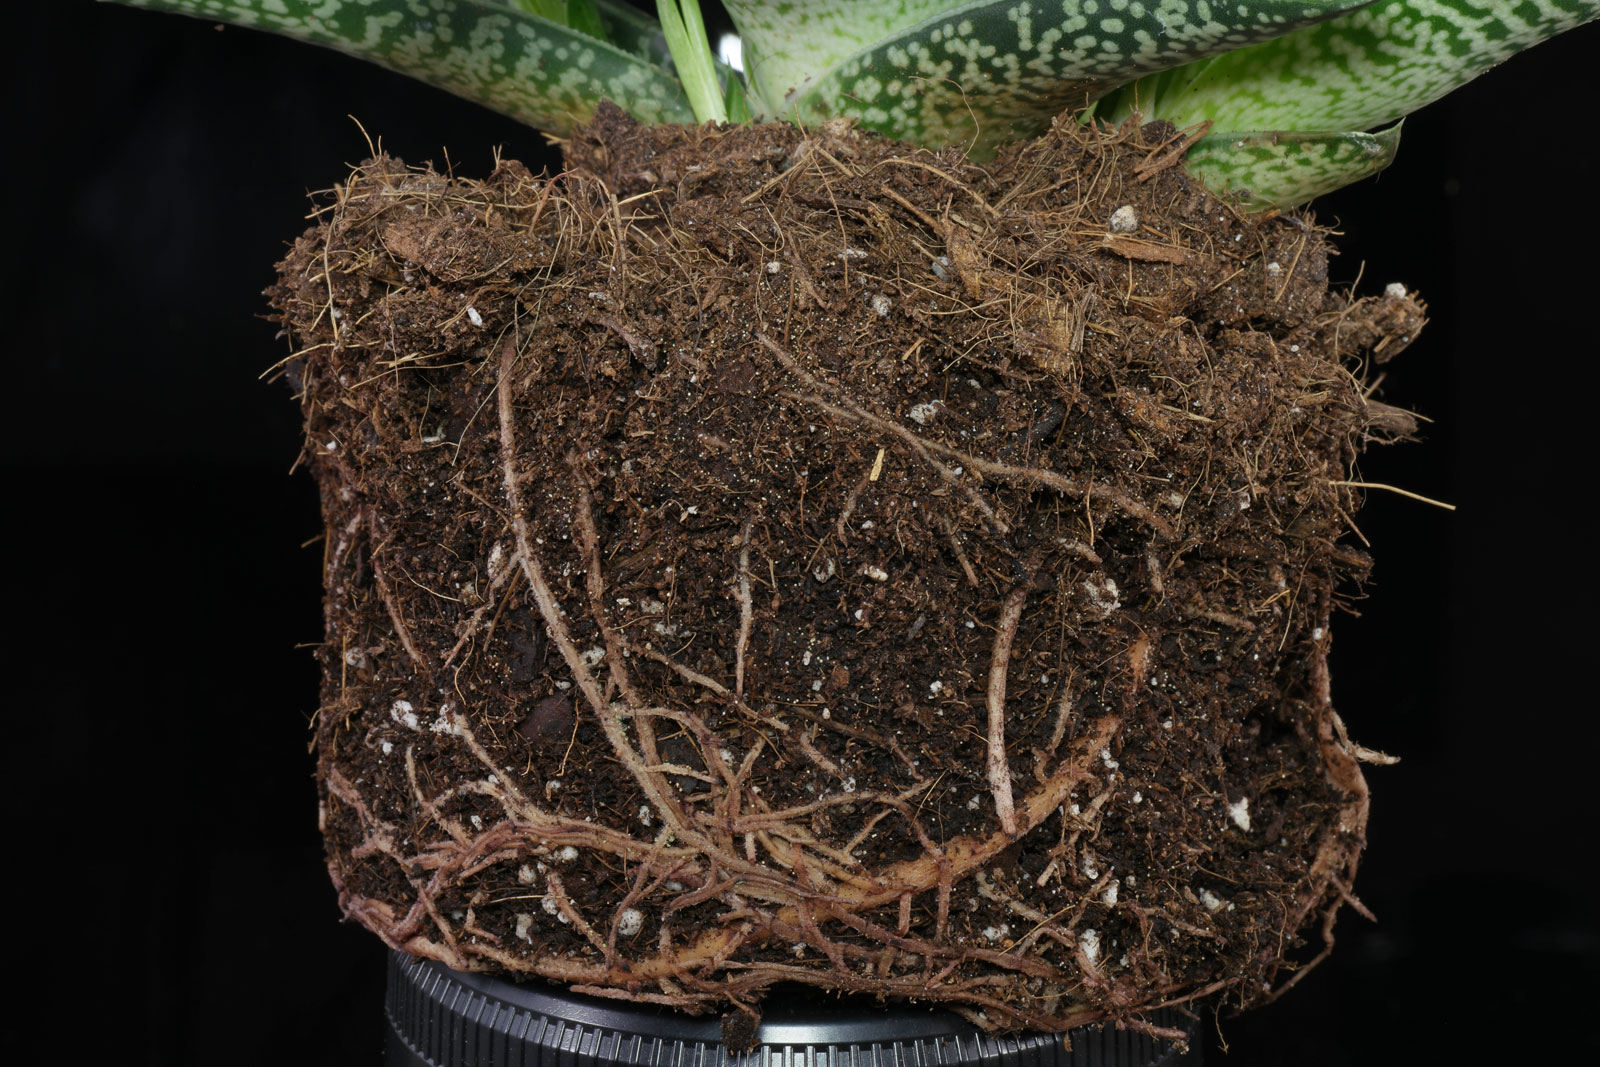 Gonialoe variegata